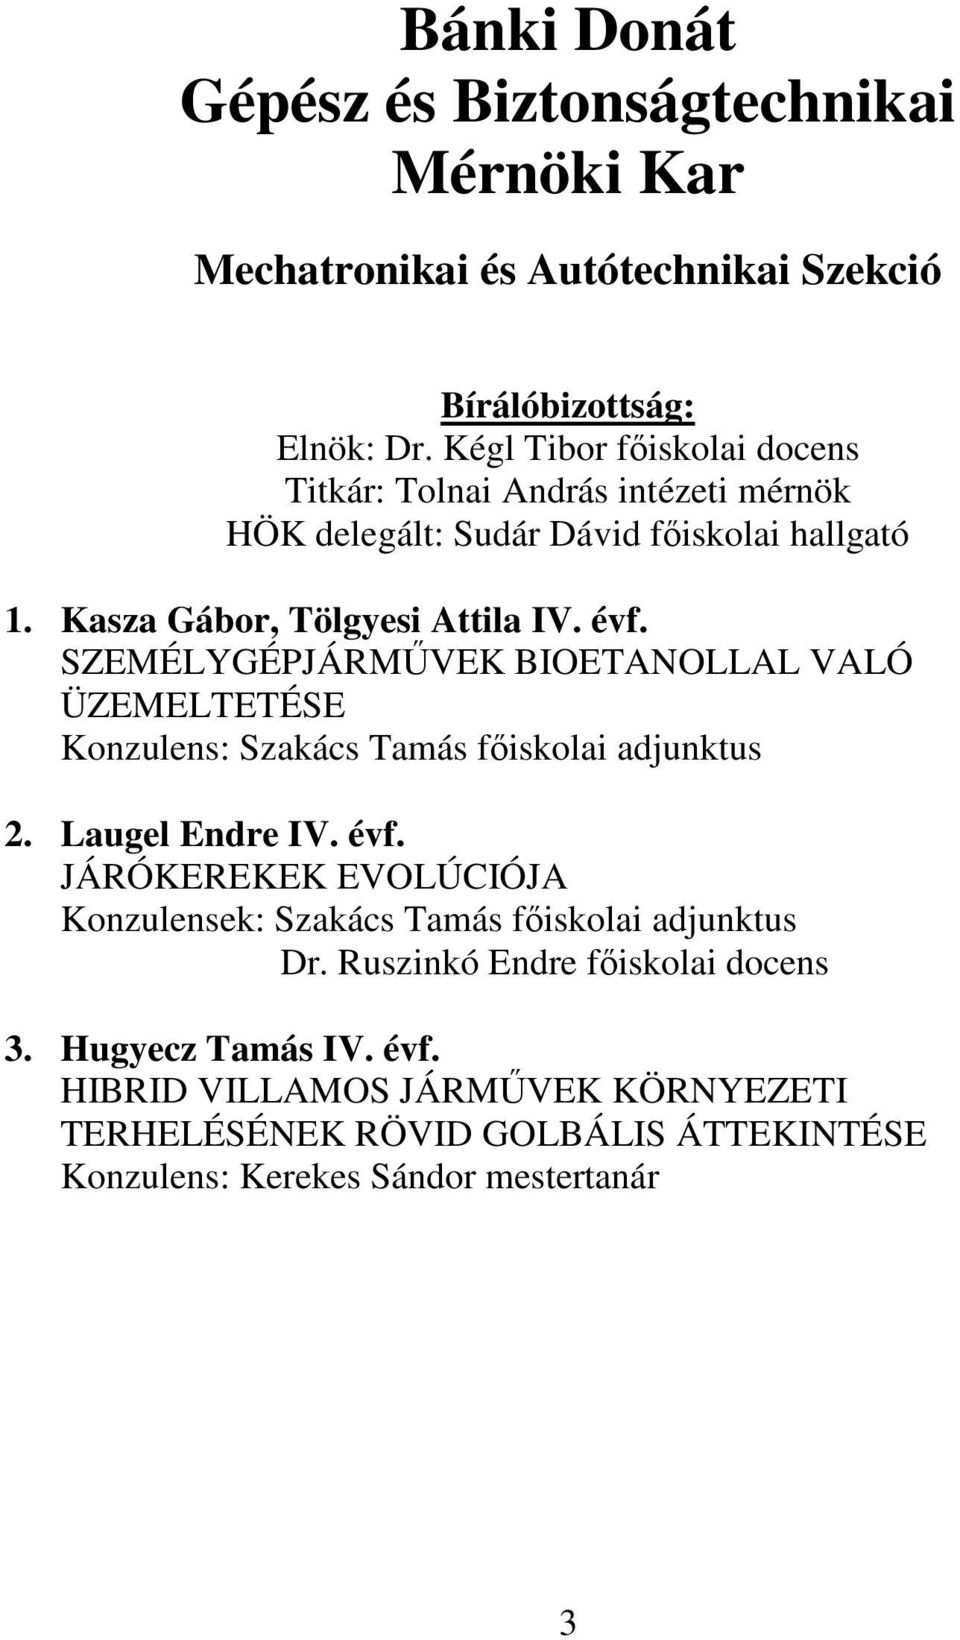 Bánki Donát Gépész és Biztonságtechnikai Mérnöki Kar - PDF Free Download